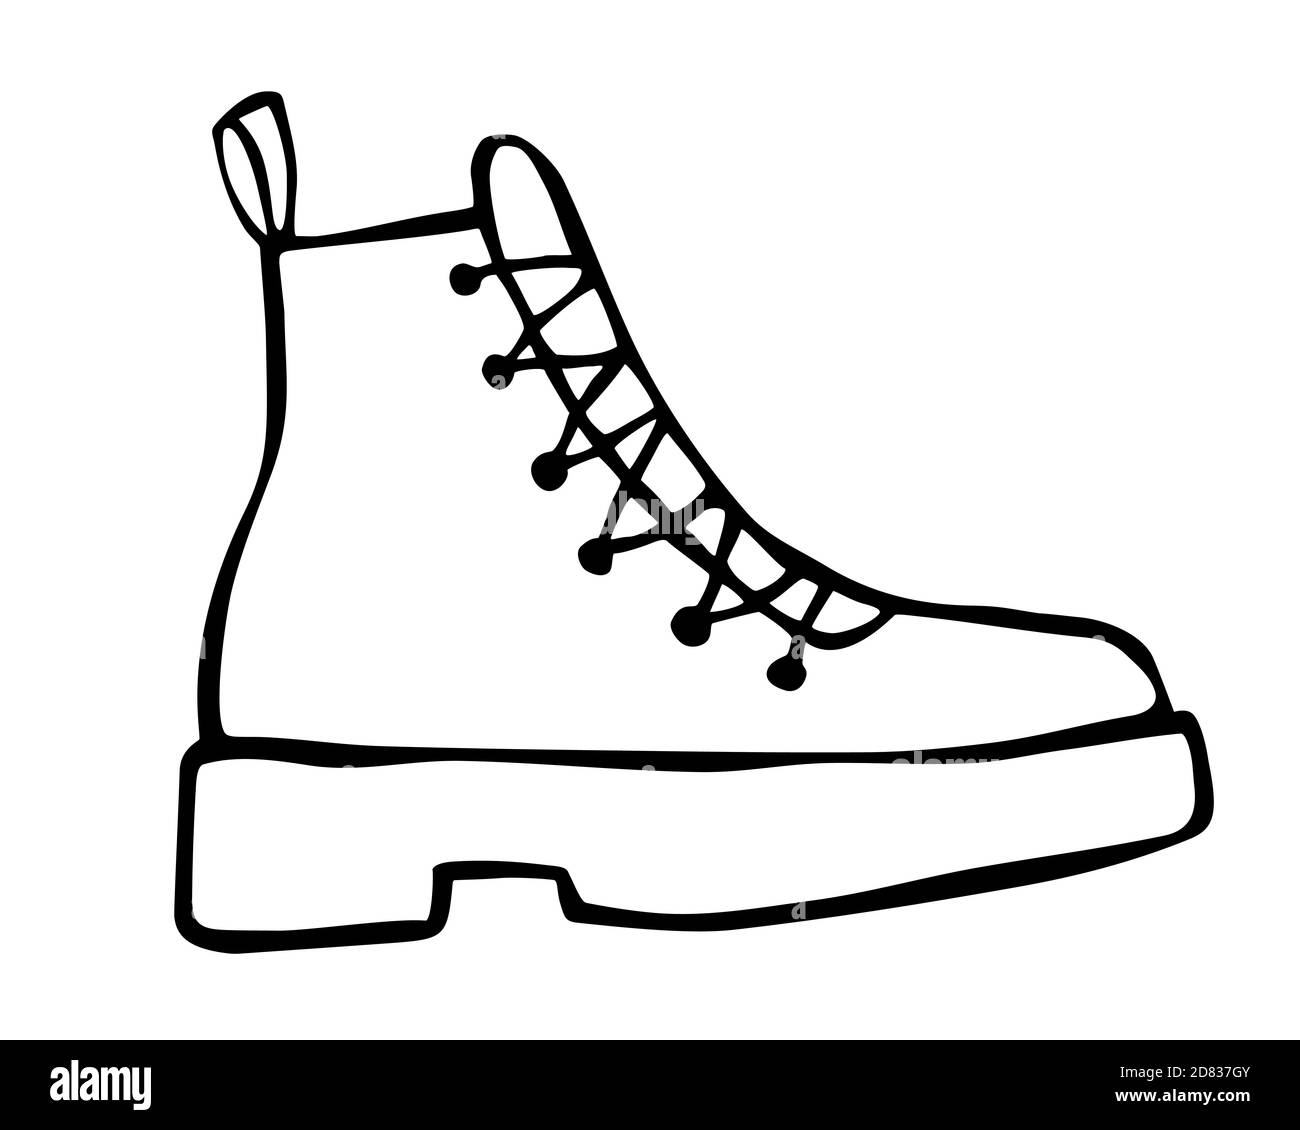 Doodle Mode Cowboy Stiefel Hand gezeichnet in Linie Art-Stil  Stock-Vektorgrafik - Alamy